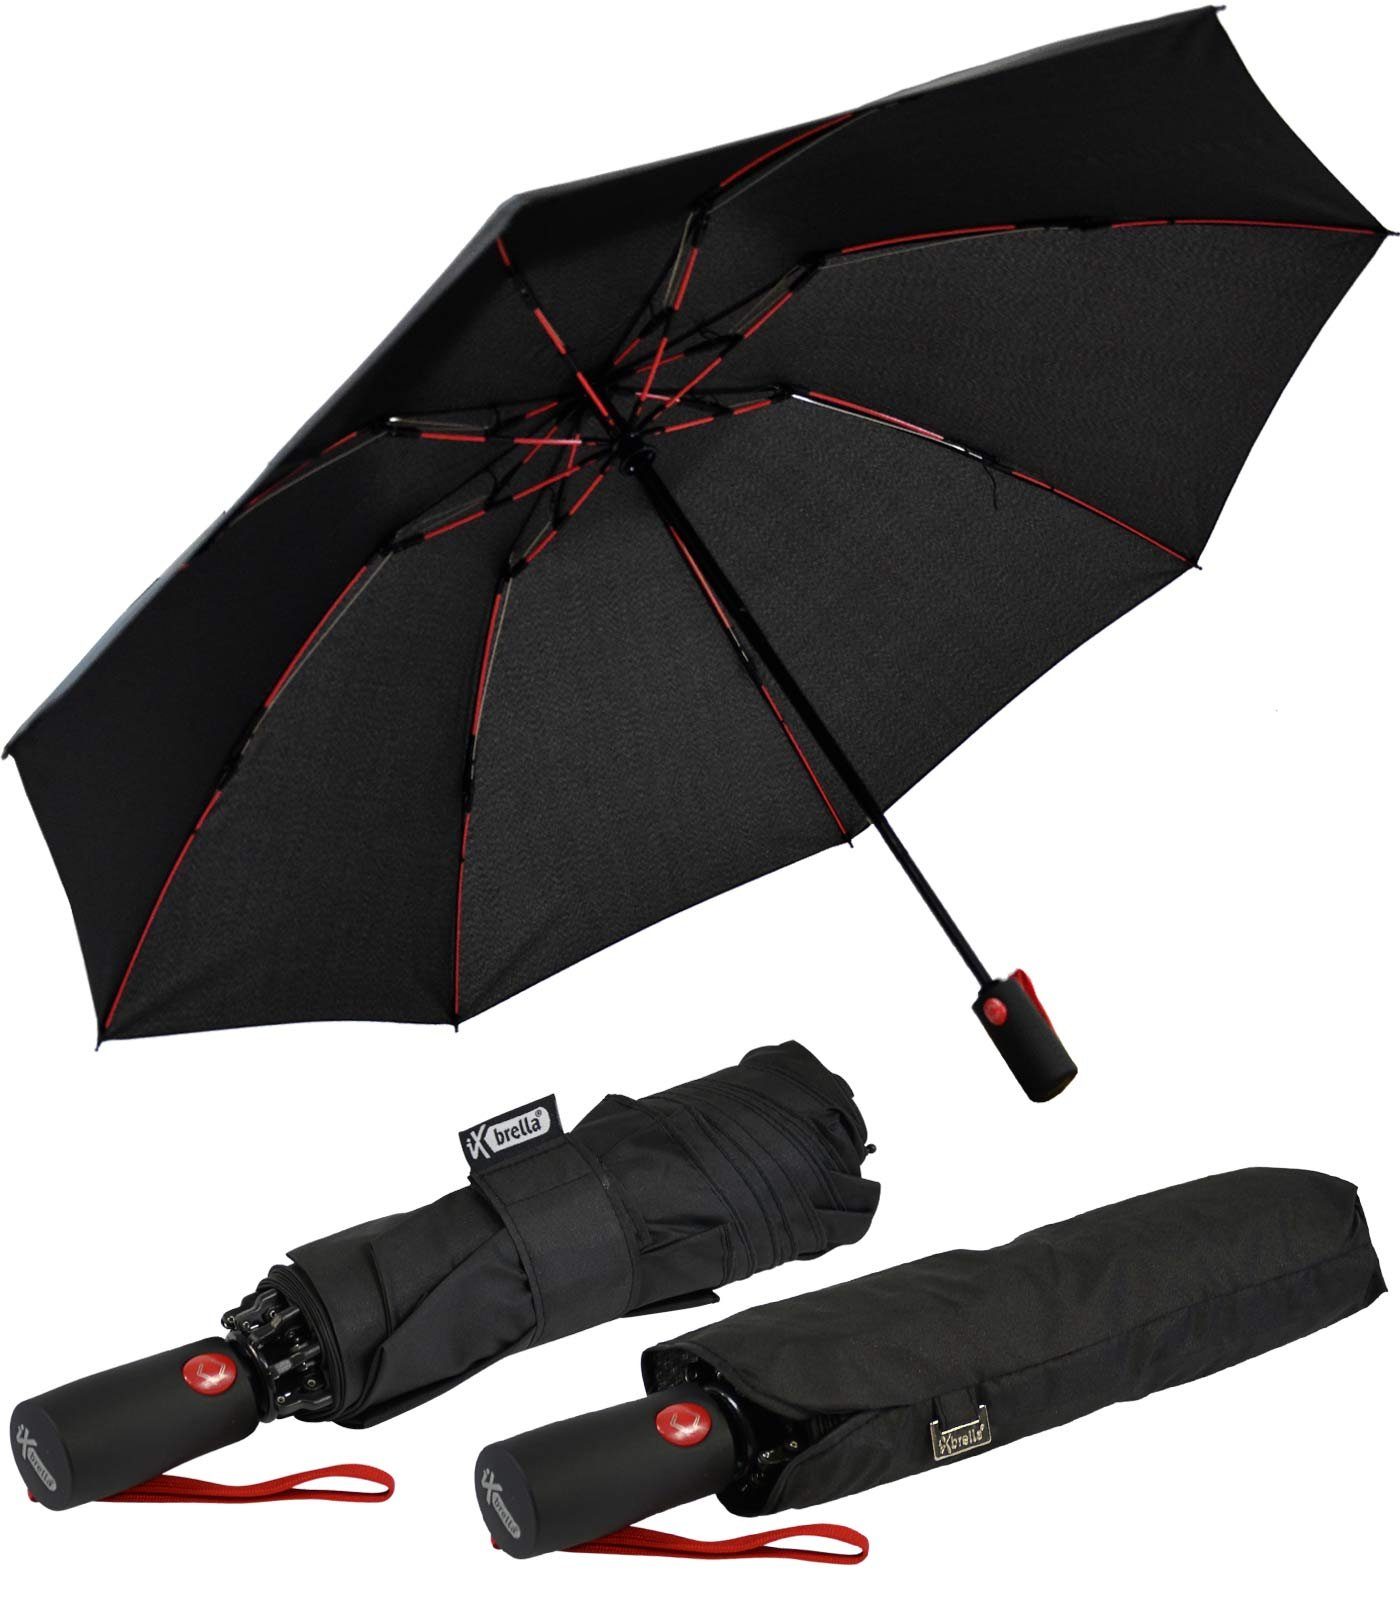 Fiberglas-Automatiksch, bunten Speichen Reverse öffnender schwarz-rot iX-brella umgekehrt stabilen mit Taschenregenschirm